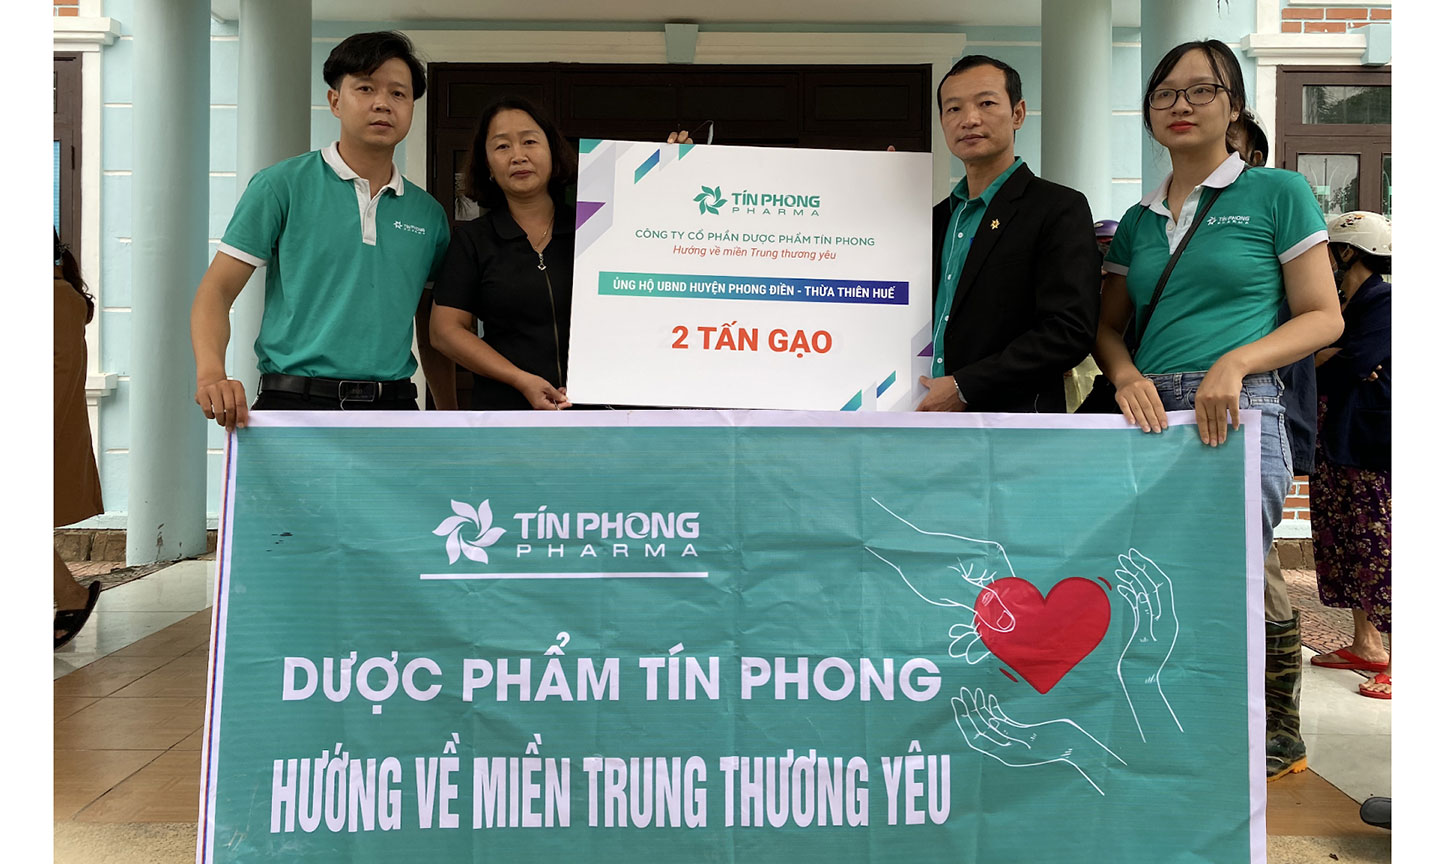 Dược phẩm Tín Phong luôn hết mình trong việc làm từ thiện.